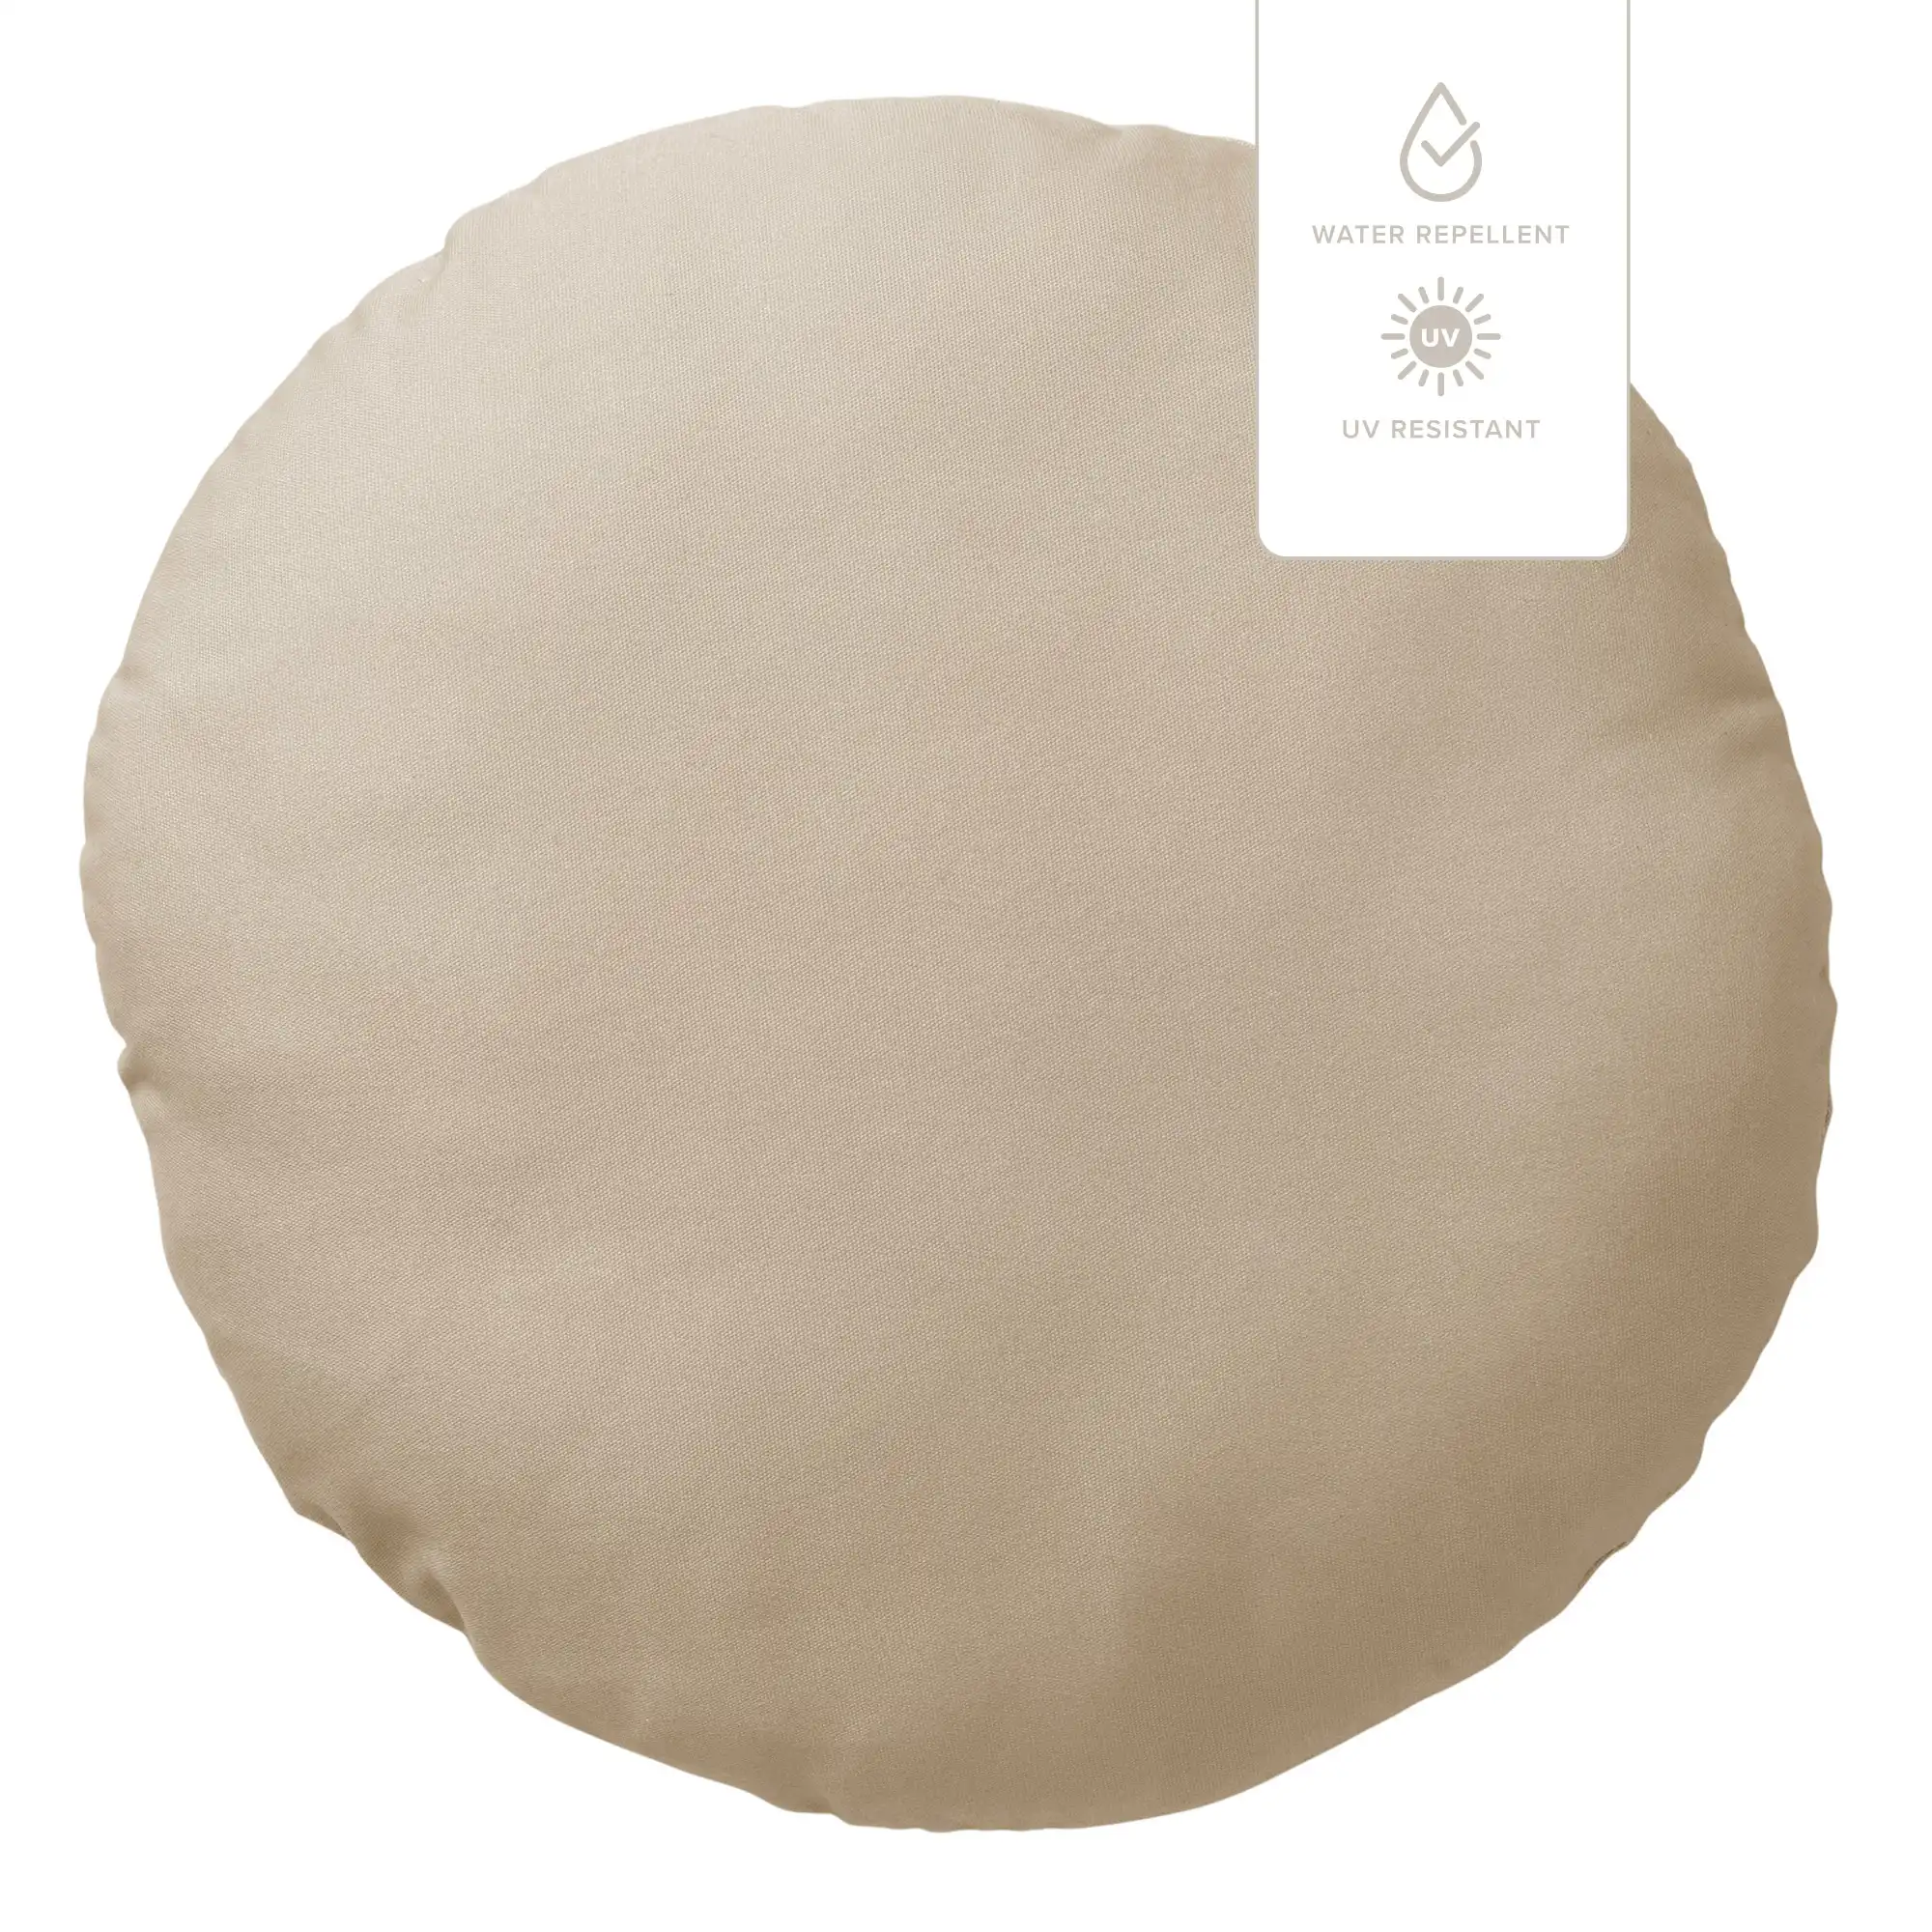 SOL - Dekokissen outdoor 40 cm Pumice Stone - wasserabweisend und  UV-beständig - beige | Dekokissen | DDL0222301579